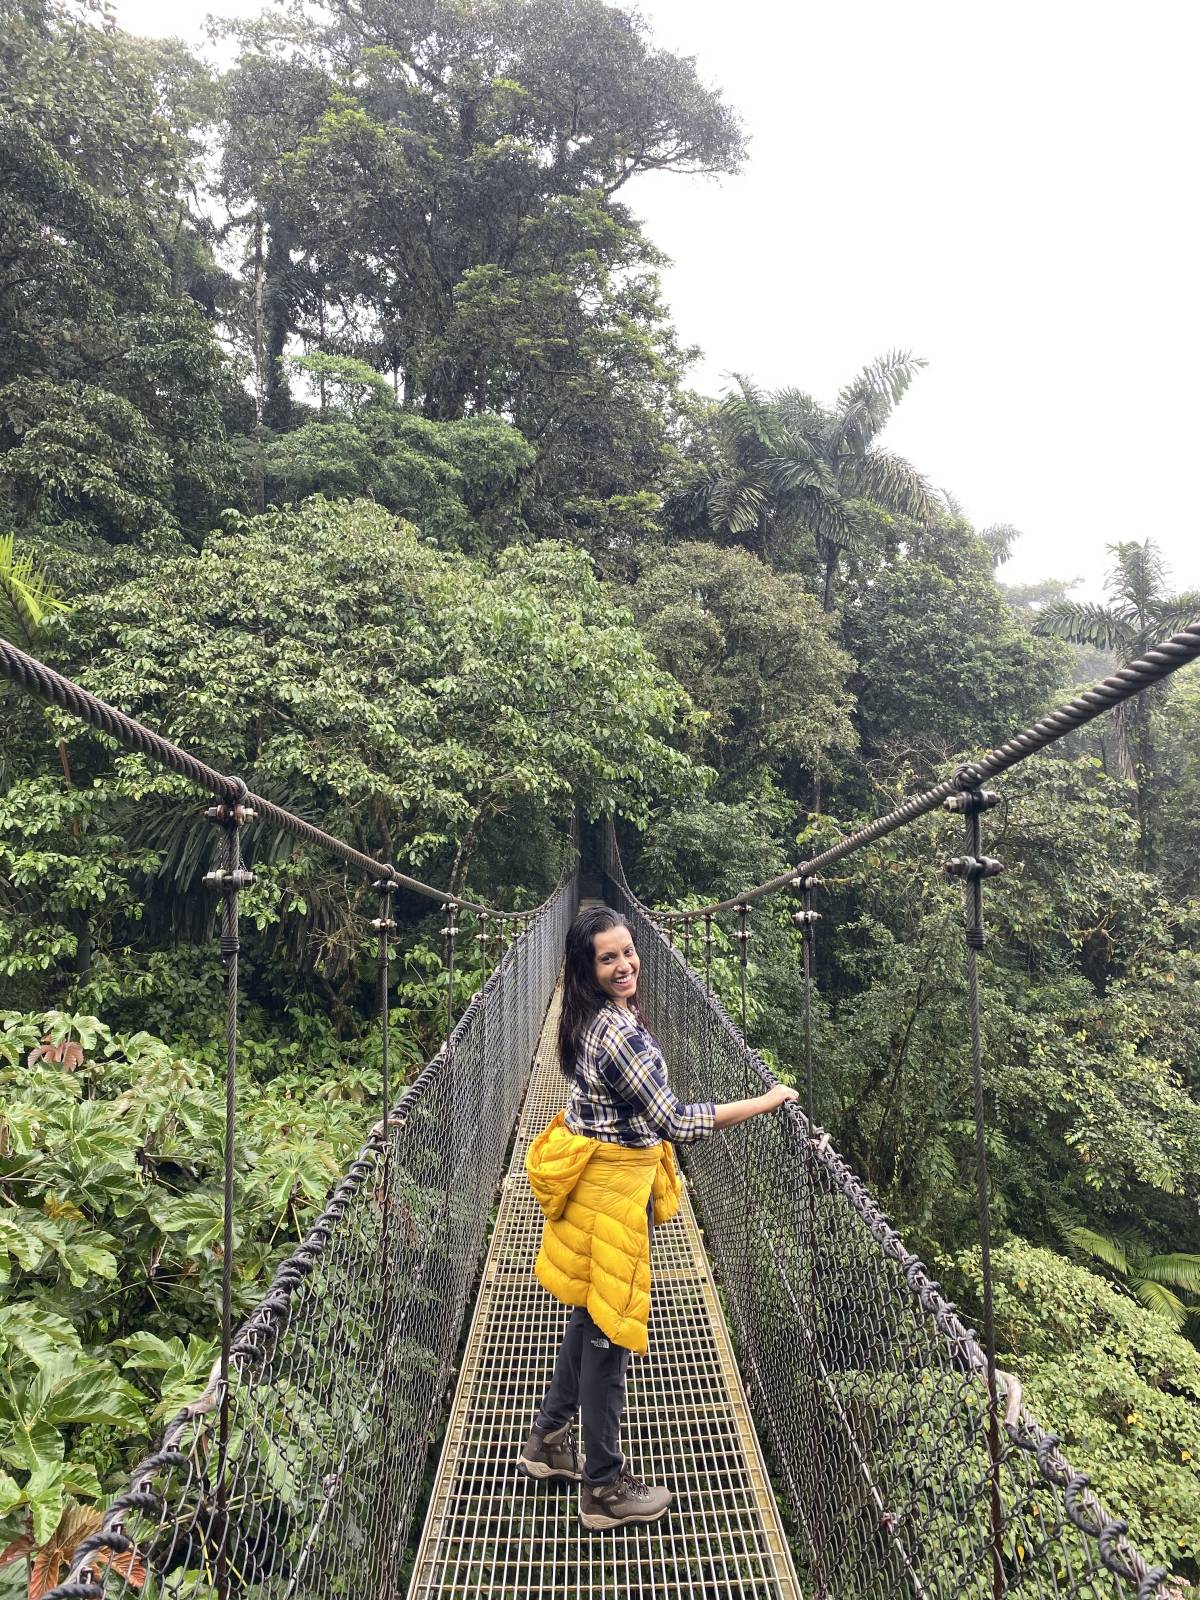 The hanging bridges of Mistico, Costa Rica